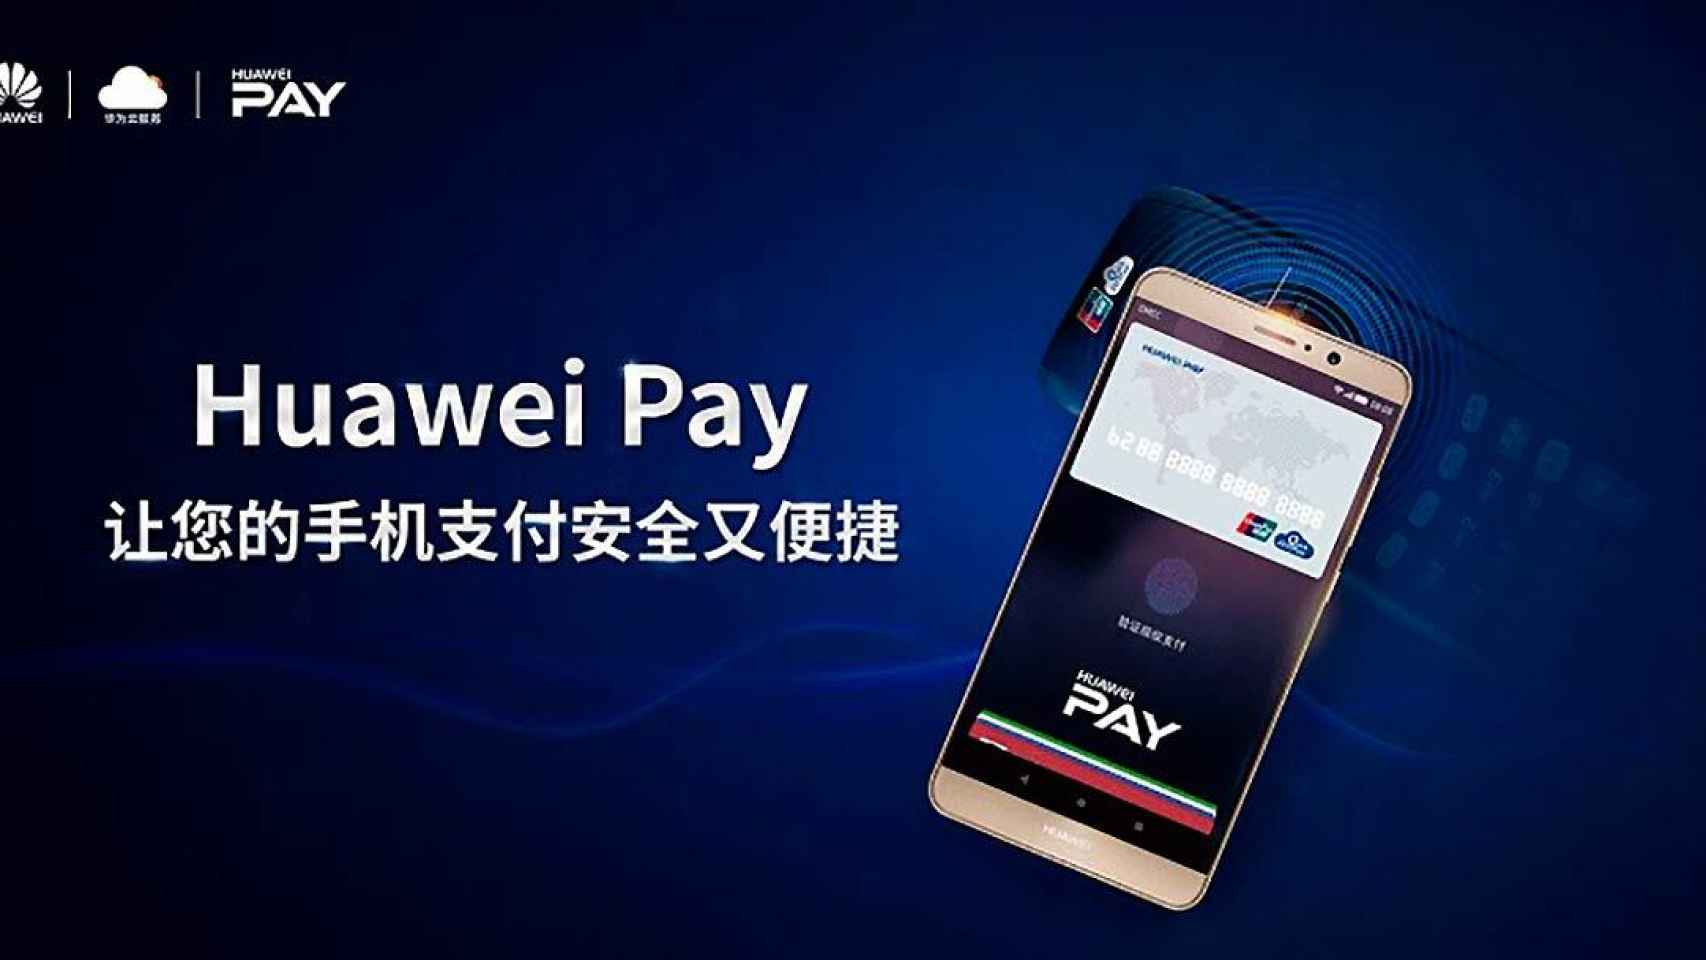 Los pagos móviles de Huawei llegan a todo el mundo gracias a UnionPay